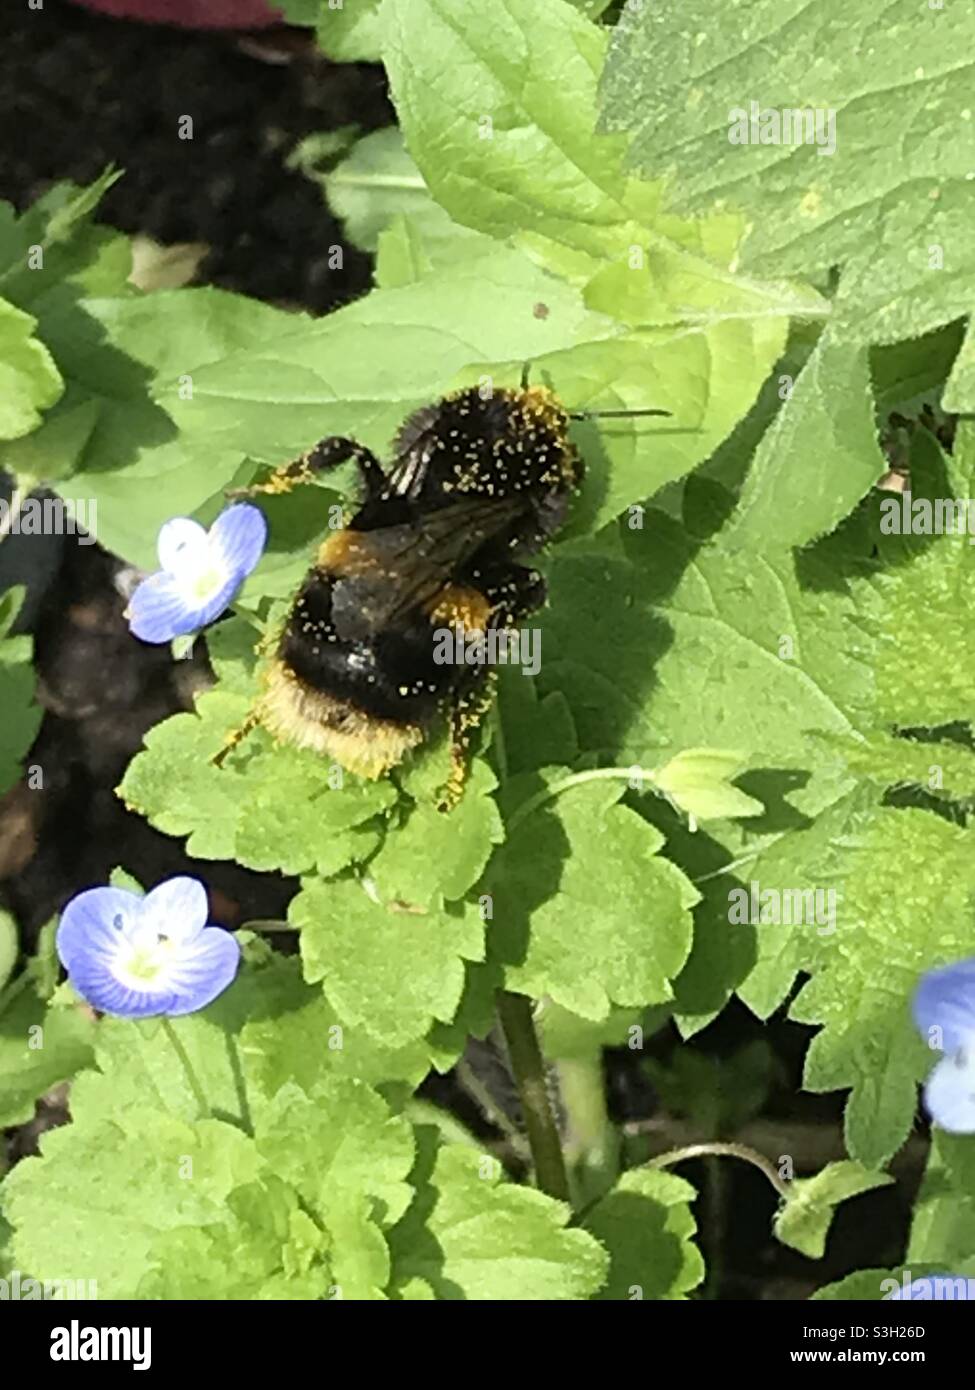 Primer plano de la abeja bumble con fondo blanco cubierto de motas de polen que caminan a través de hojas y flores azules Foto de stock